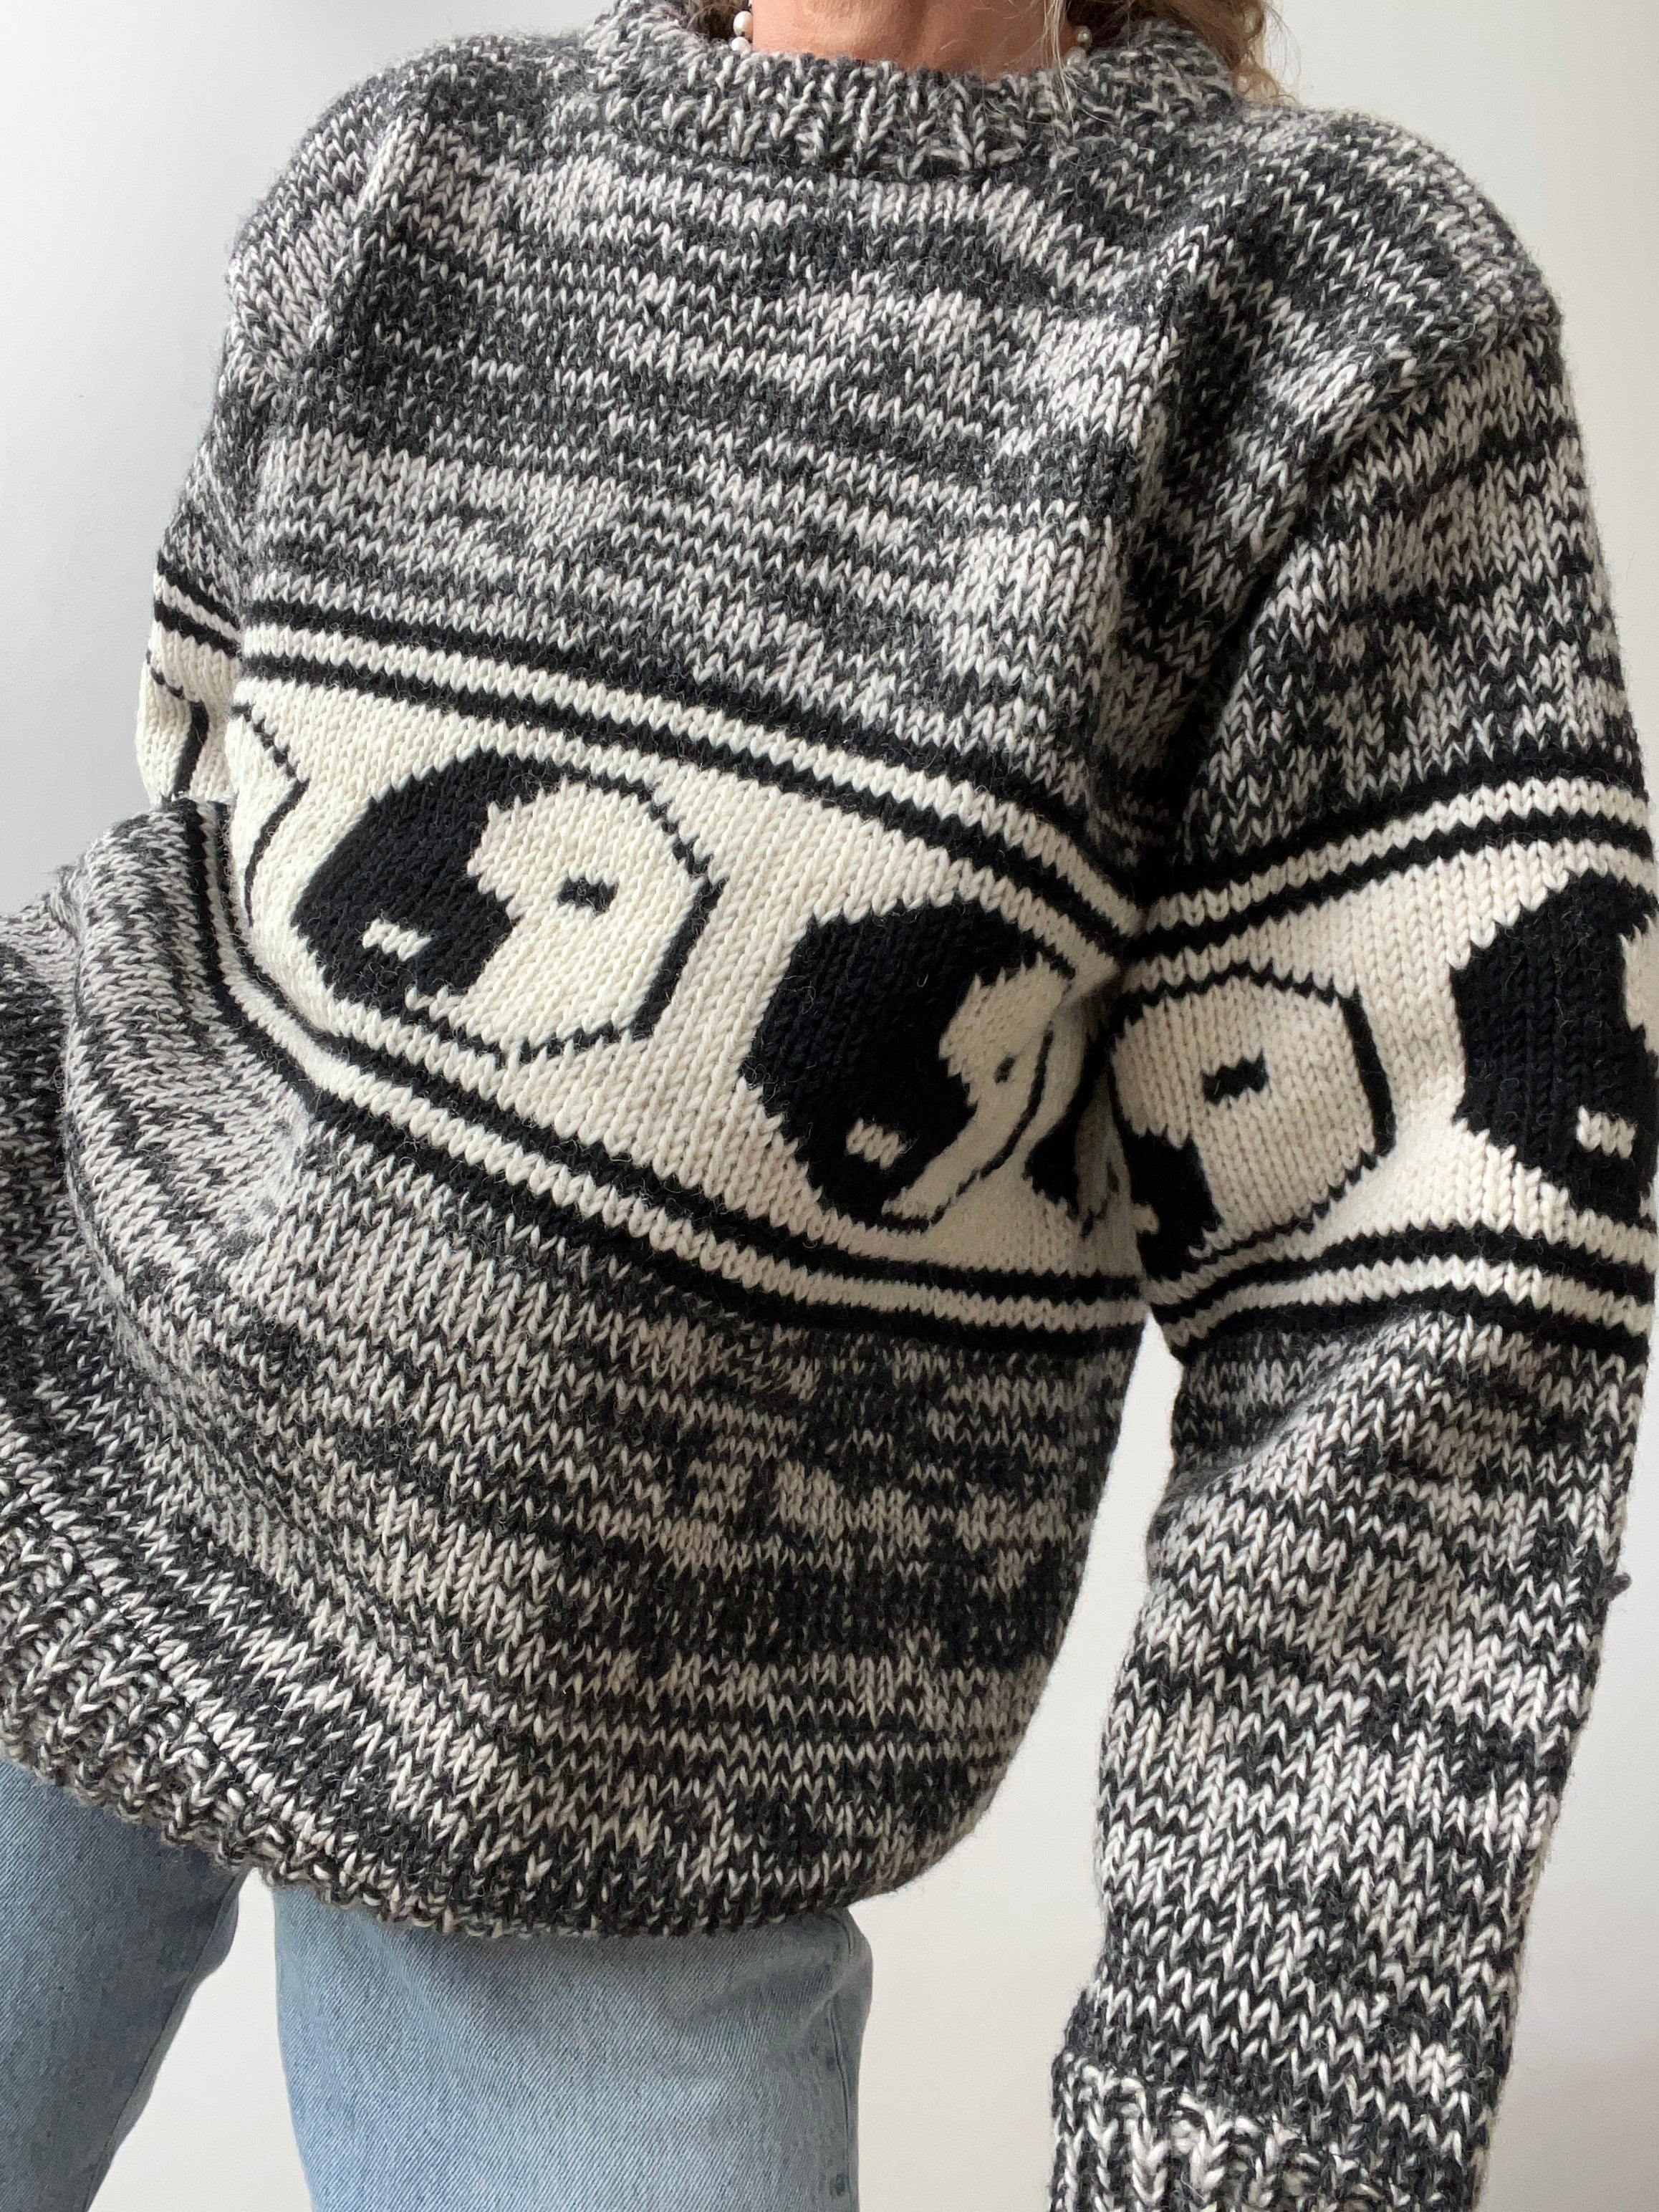 Jetsetbohemian Jumpers Yin Yang Handknit with Fleece